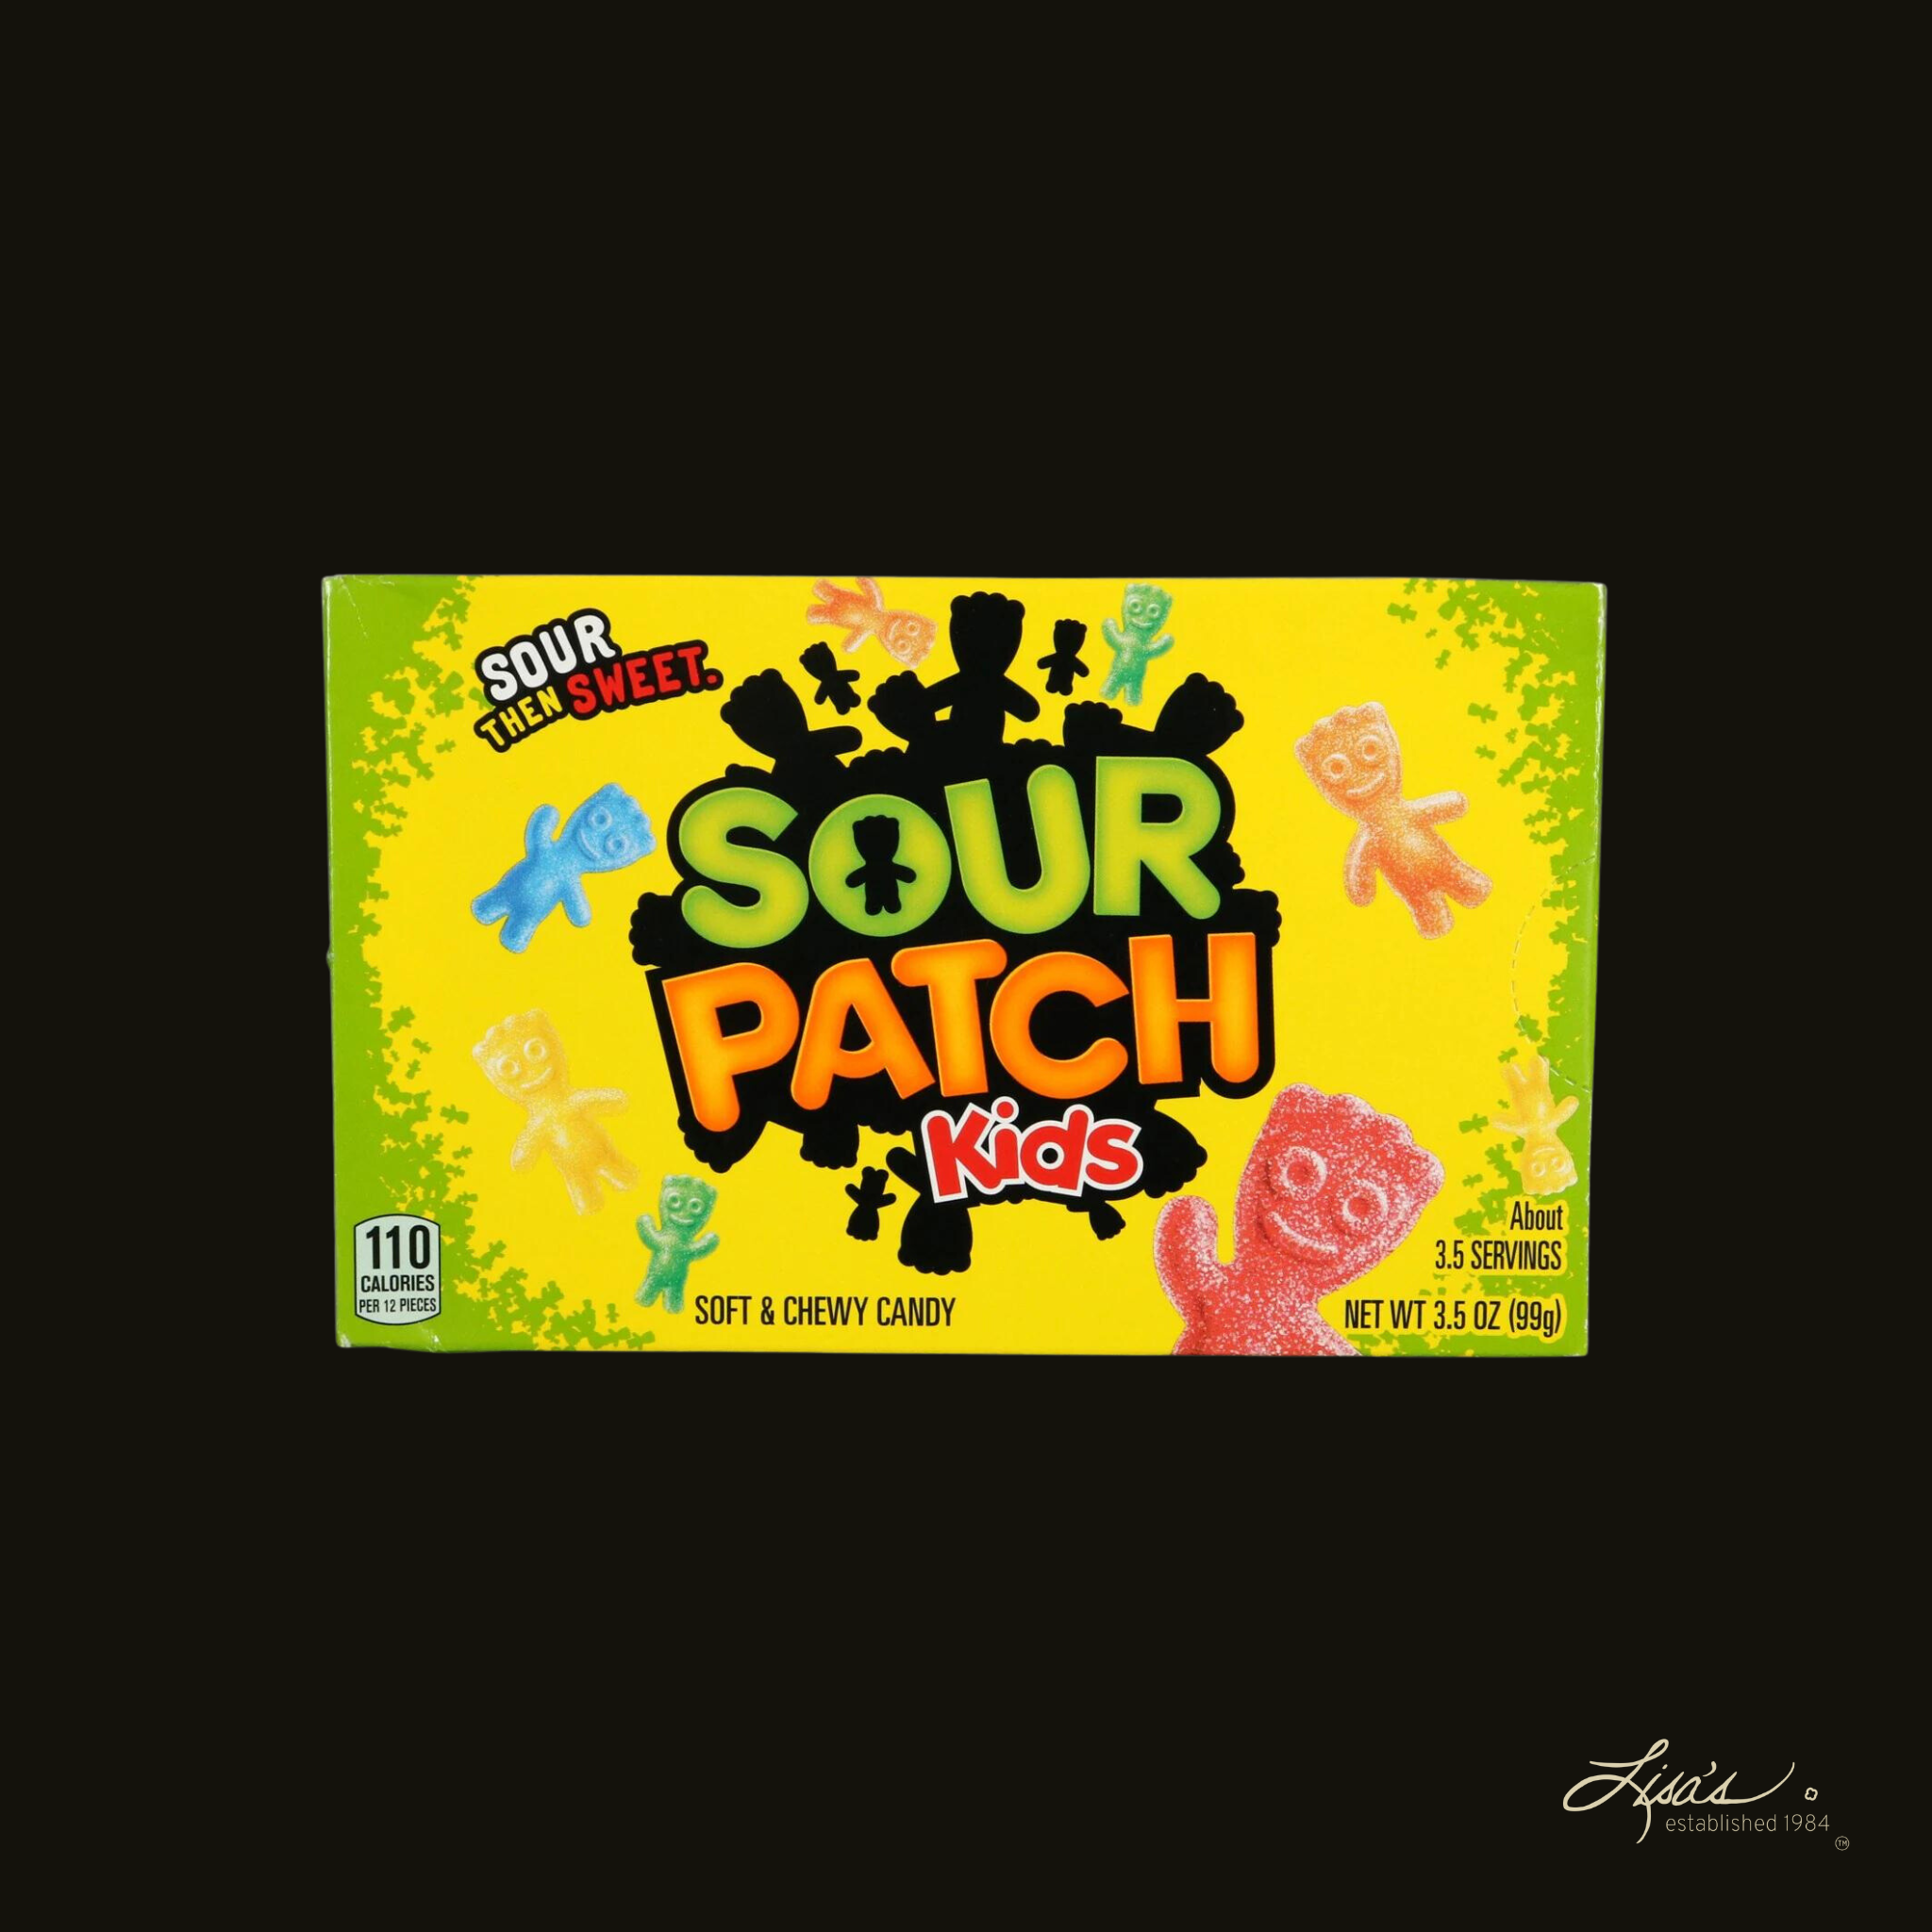 Sour Patch Kids Candy – Lisa's Popcorn